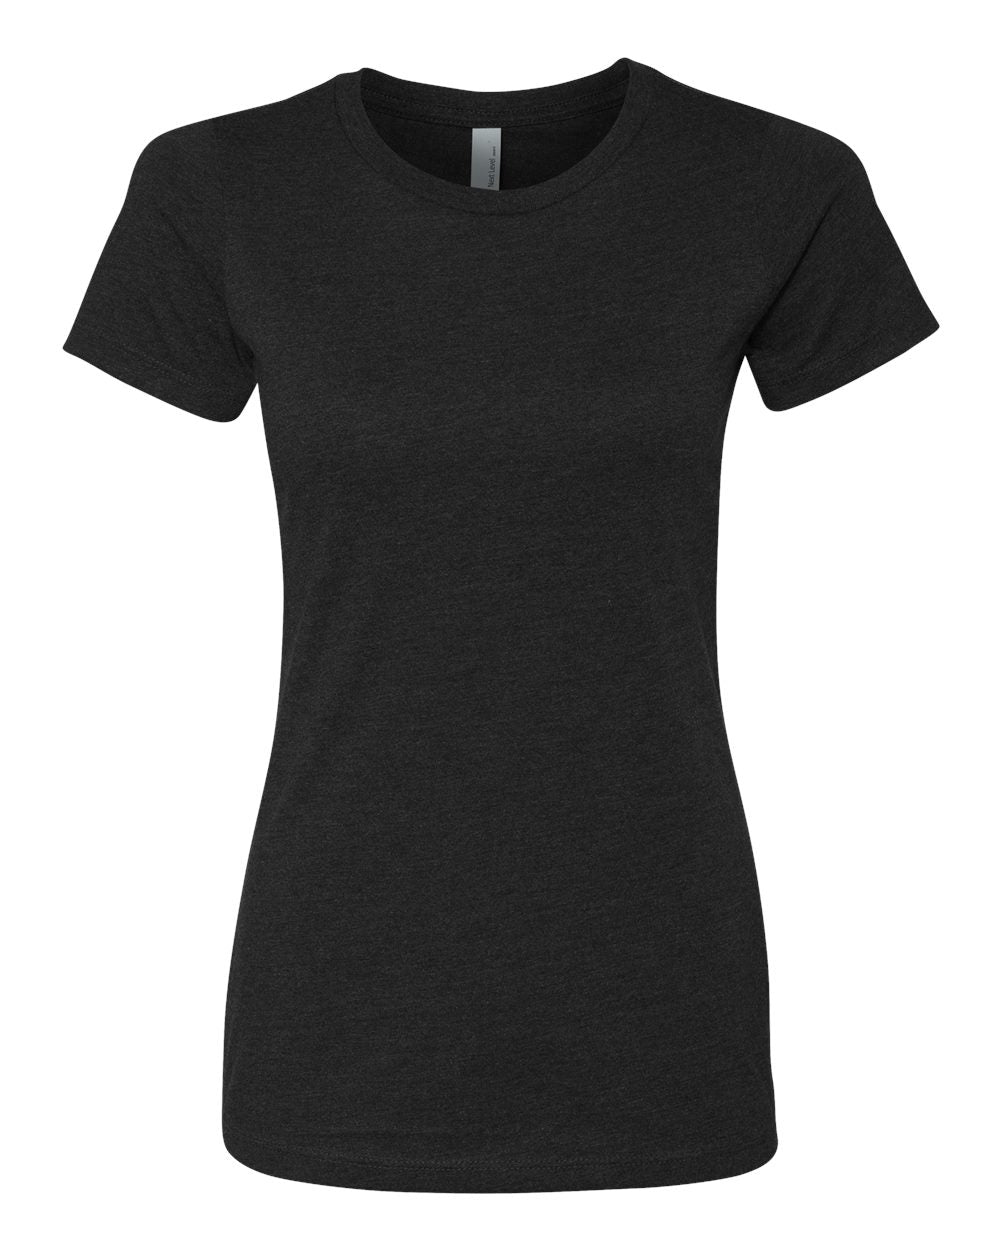 Next Level - Women’s CVC T-Shirt - 6610- XS - 3XL